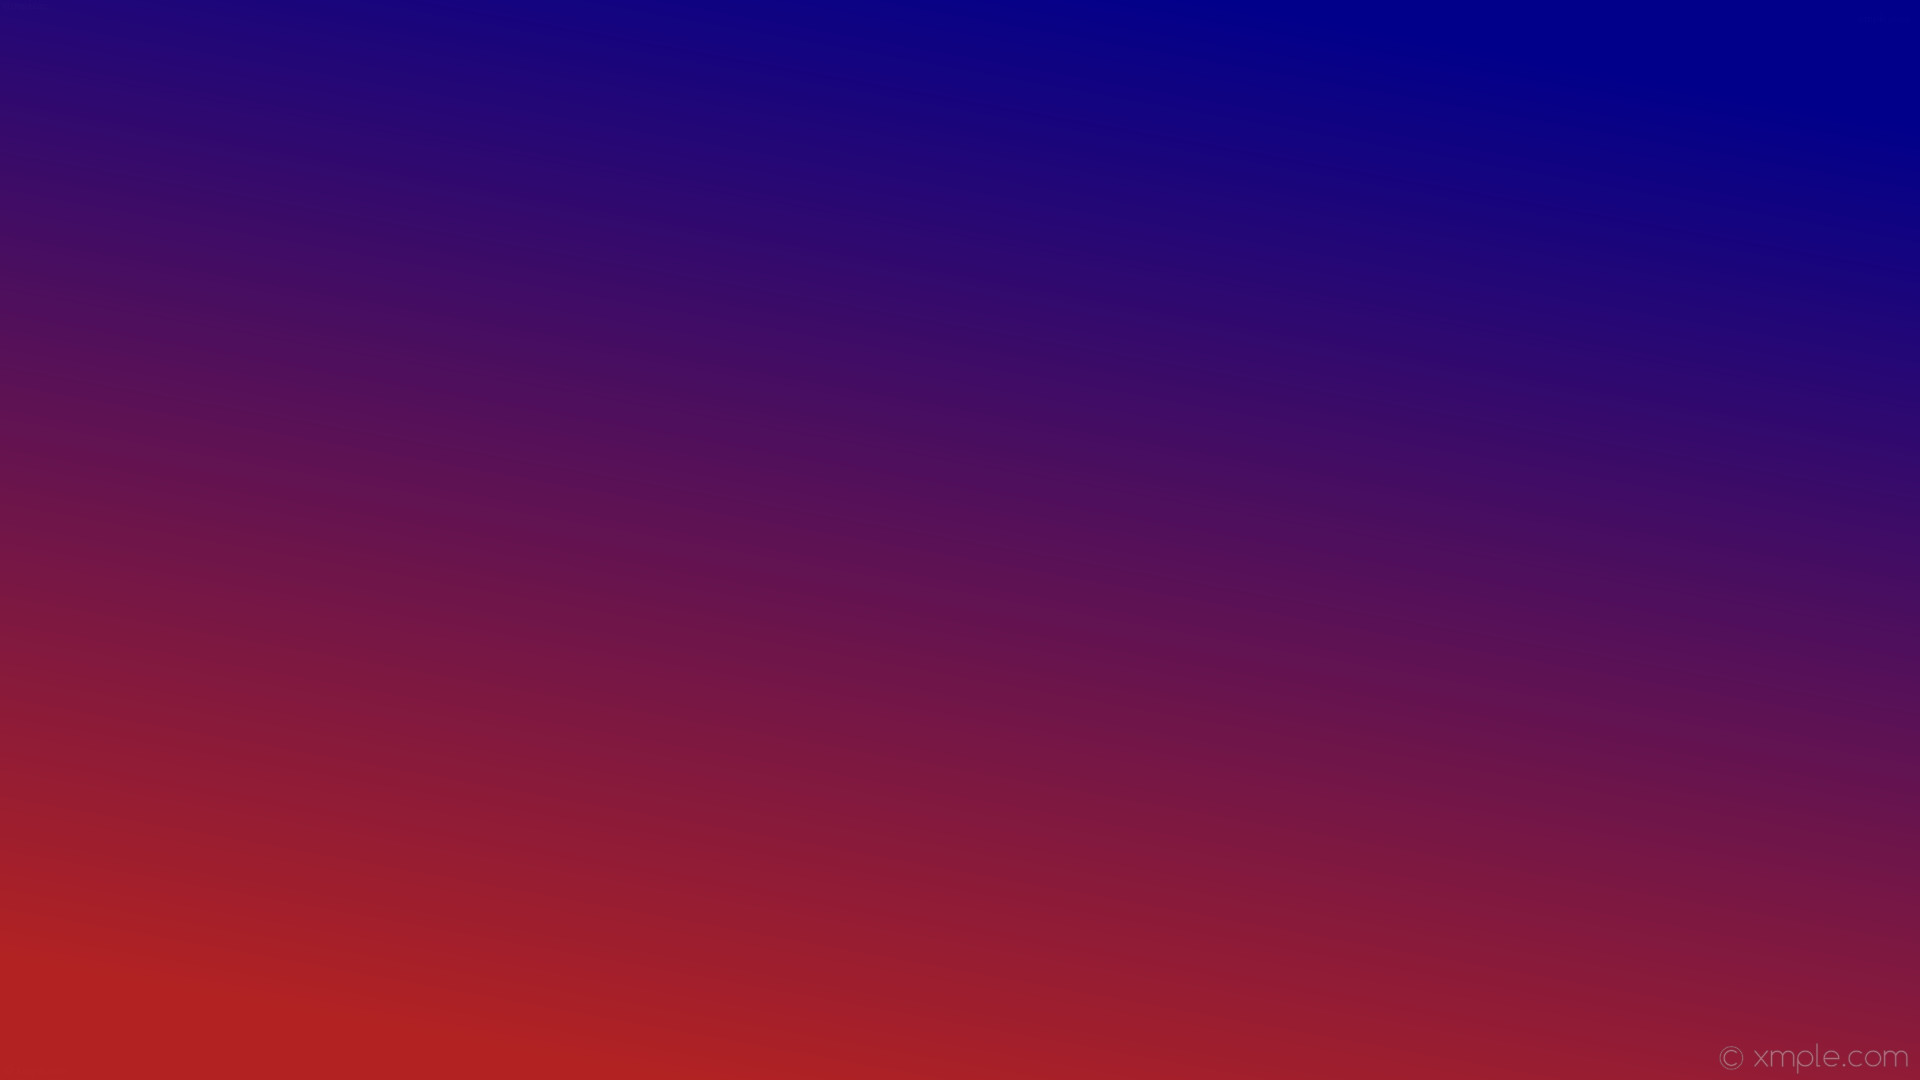 1920x1080 wallpaper blue red gradient linear dark blue fire brick #00008b #b22222 60Â°